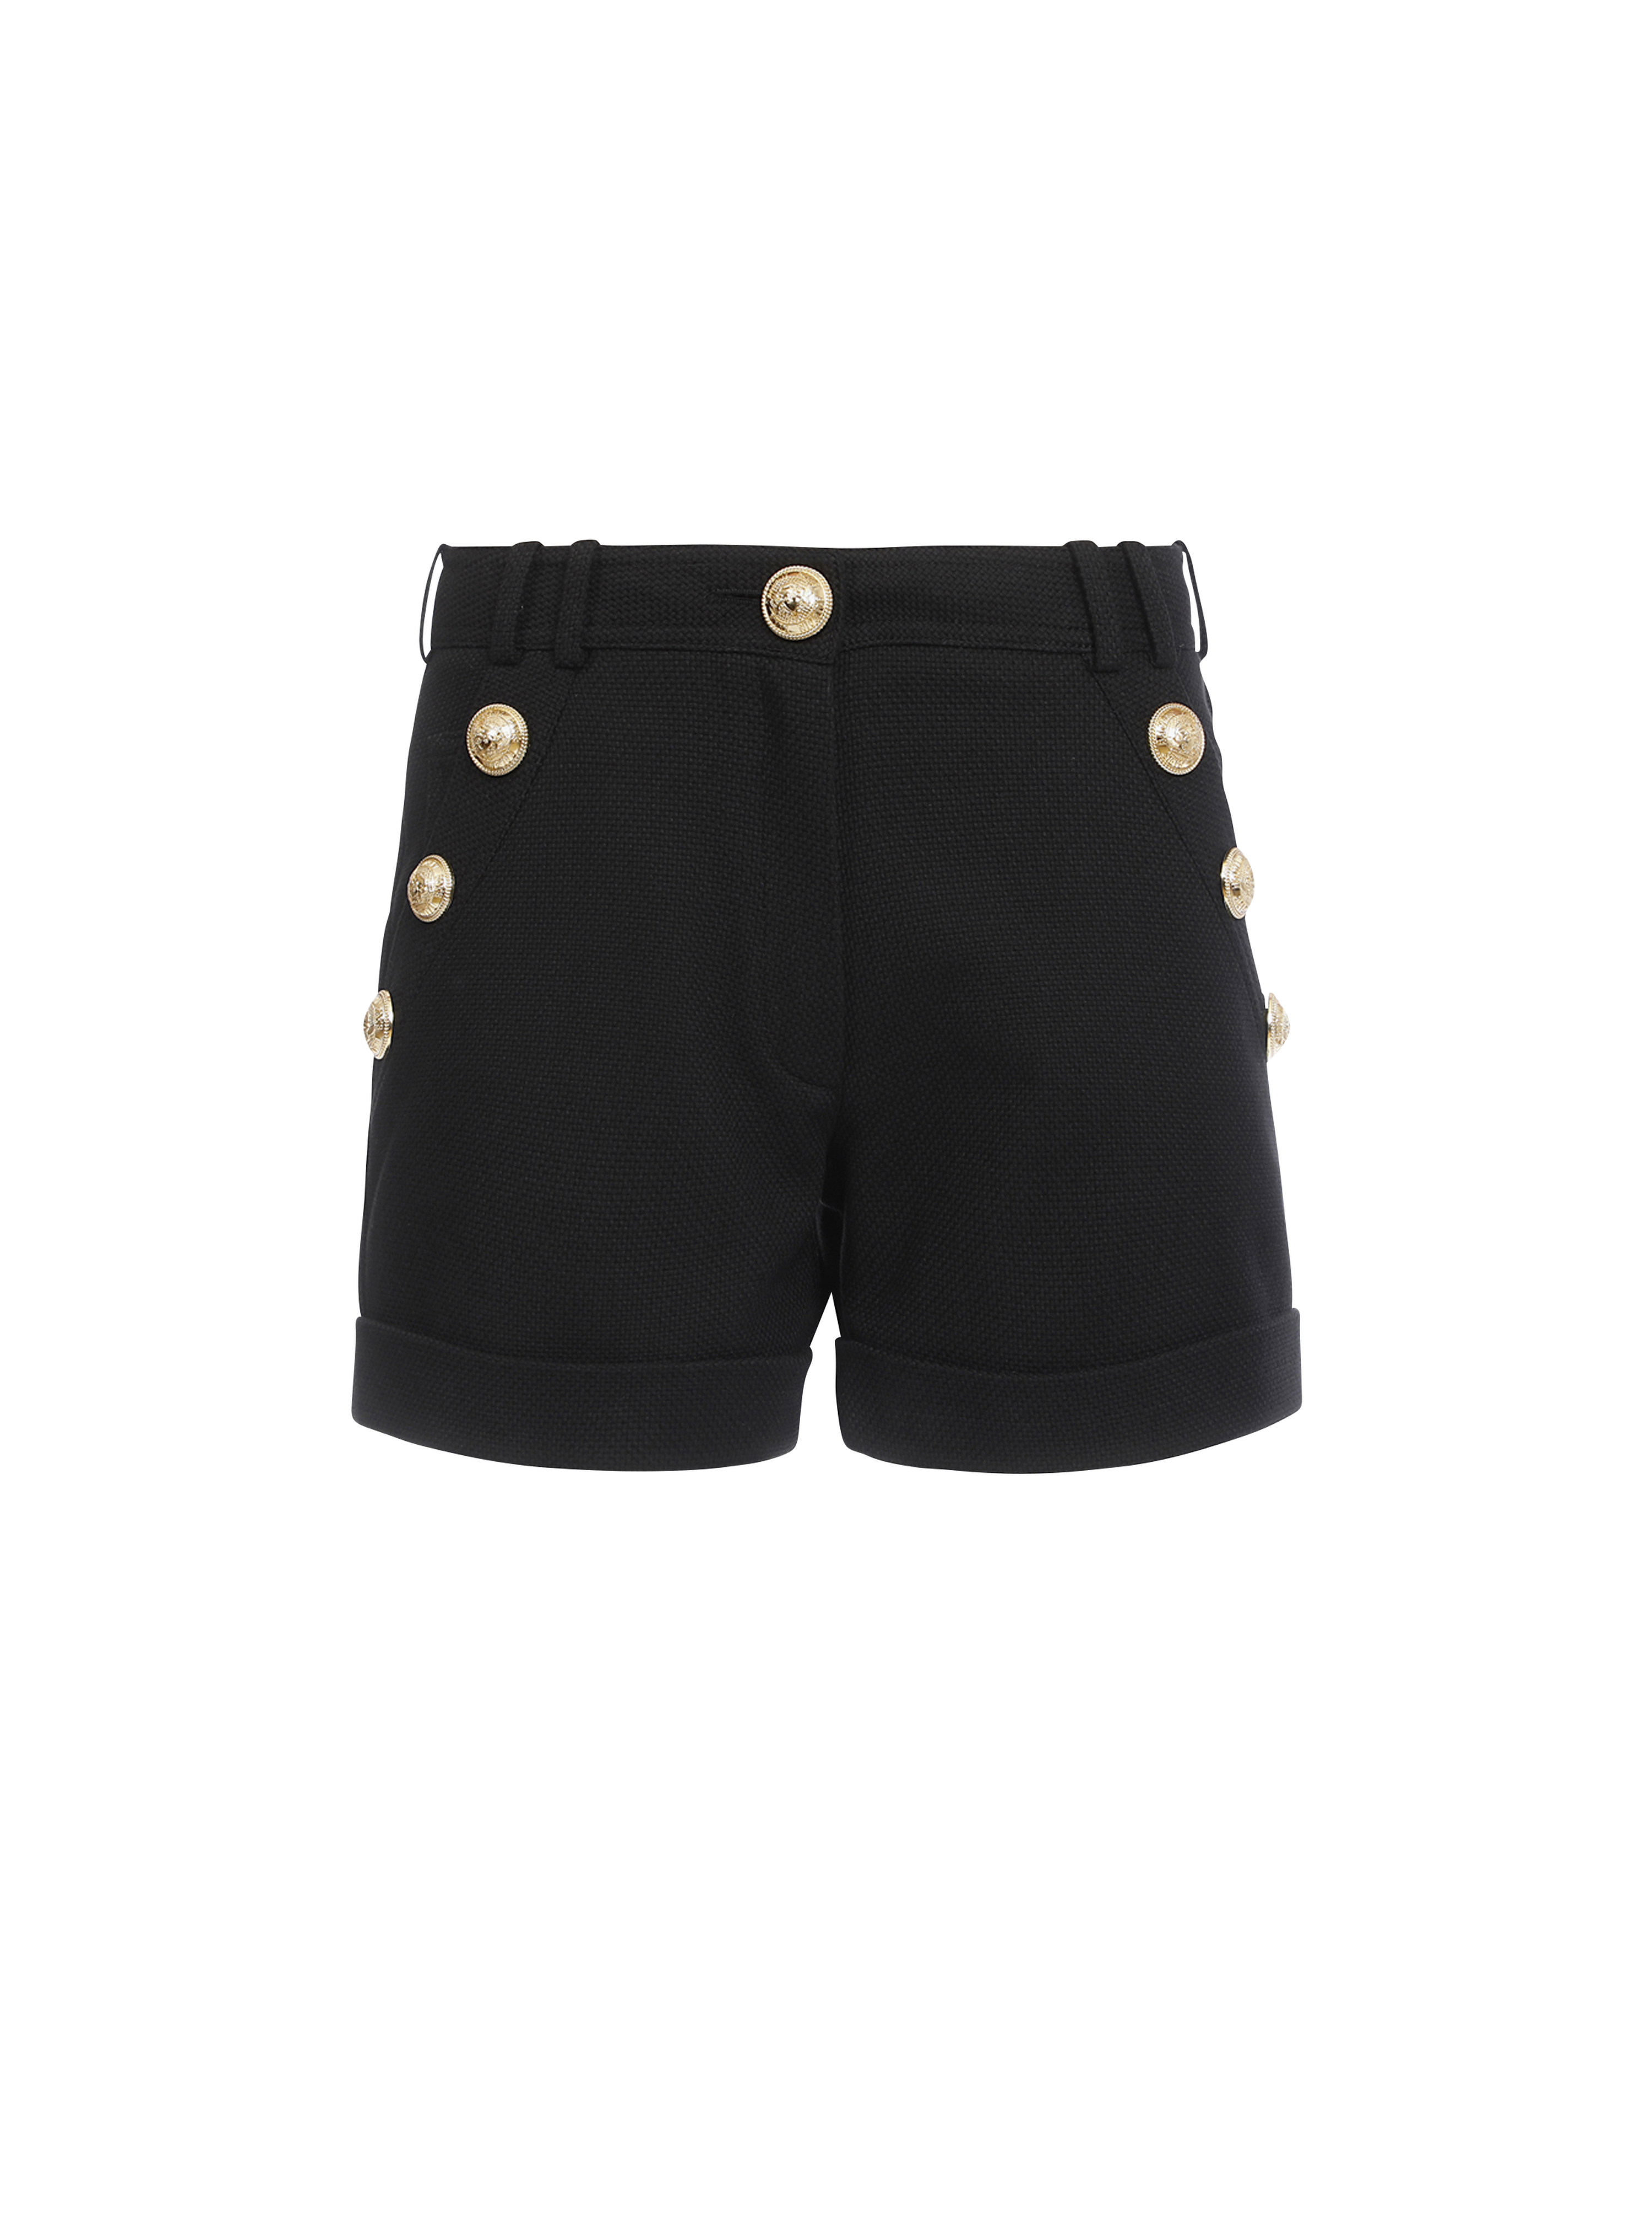 Pantalones cortos de algodón de talle bajo con botones dorados, negro